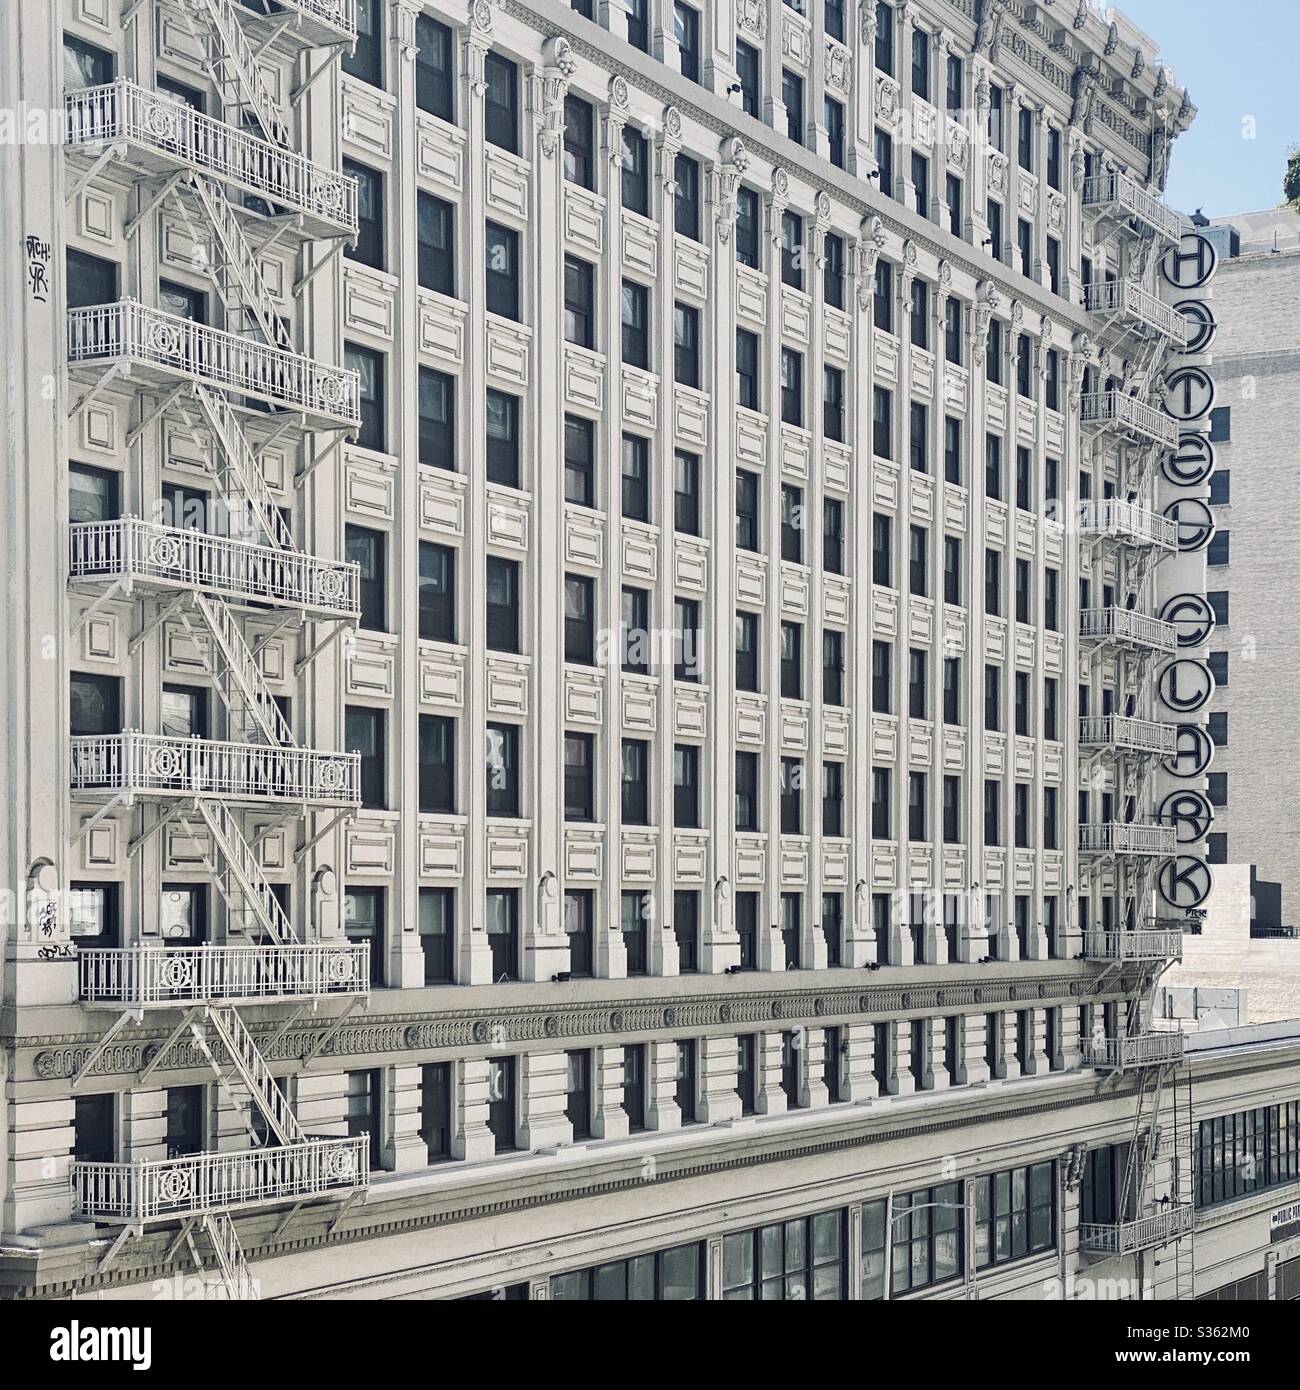 LOS ANGELES, CA, APR 2020: Blick auf das Hotel Clark, in der Innenstadt. Neu gestaltete Innenausstattung mit historischer Fassade, das Gebäude wurde umfangreich renoviert und wartet auf die Wiedereröffnung. Stockfoto